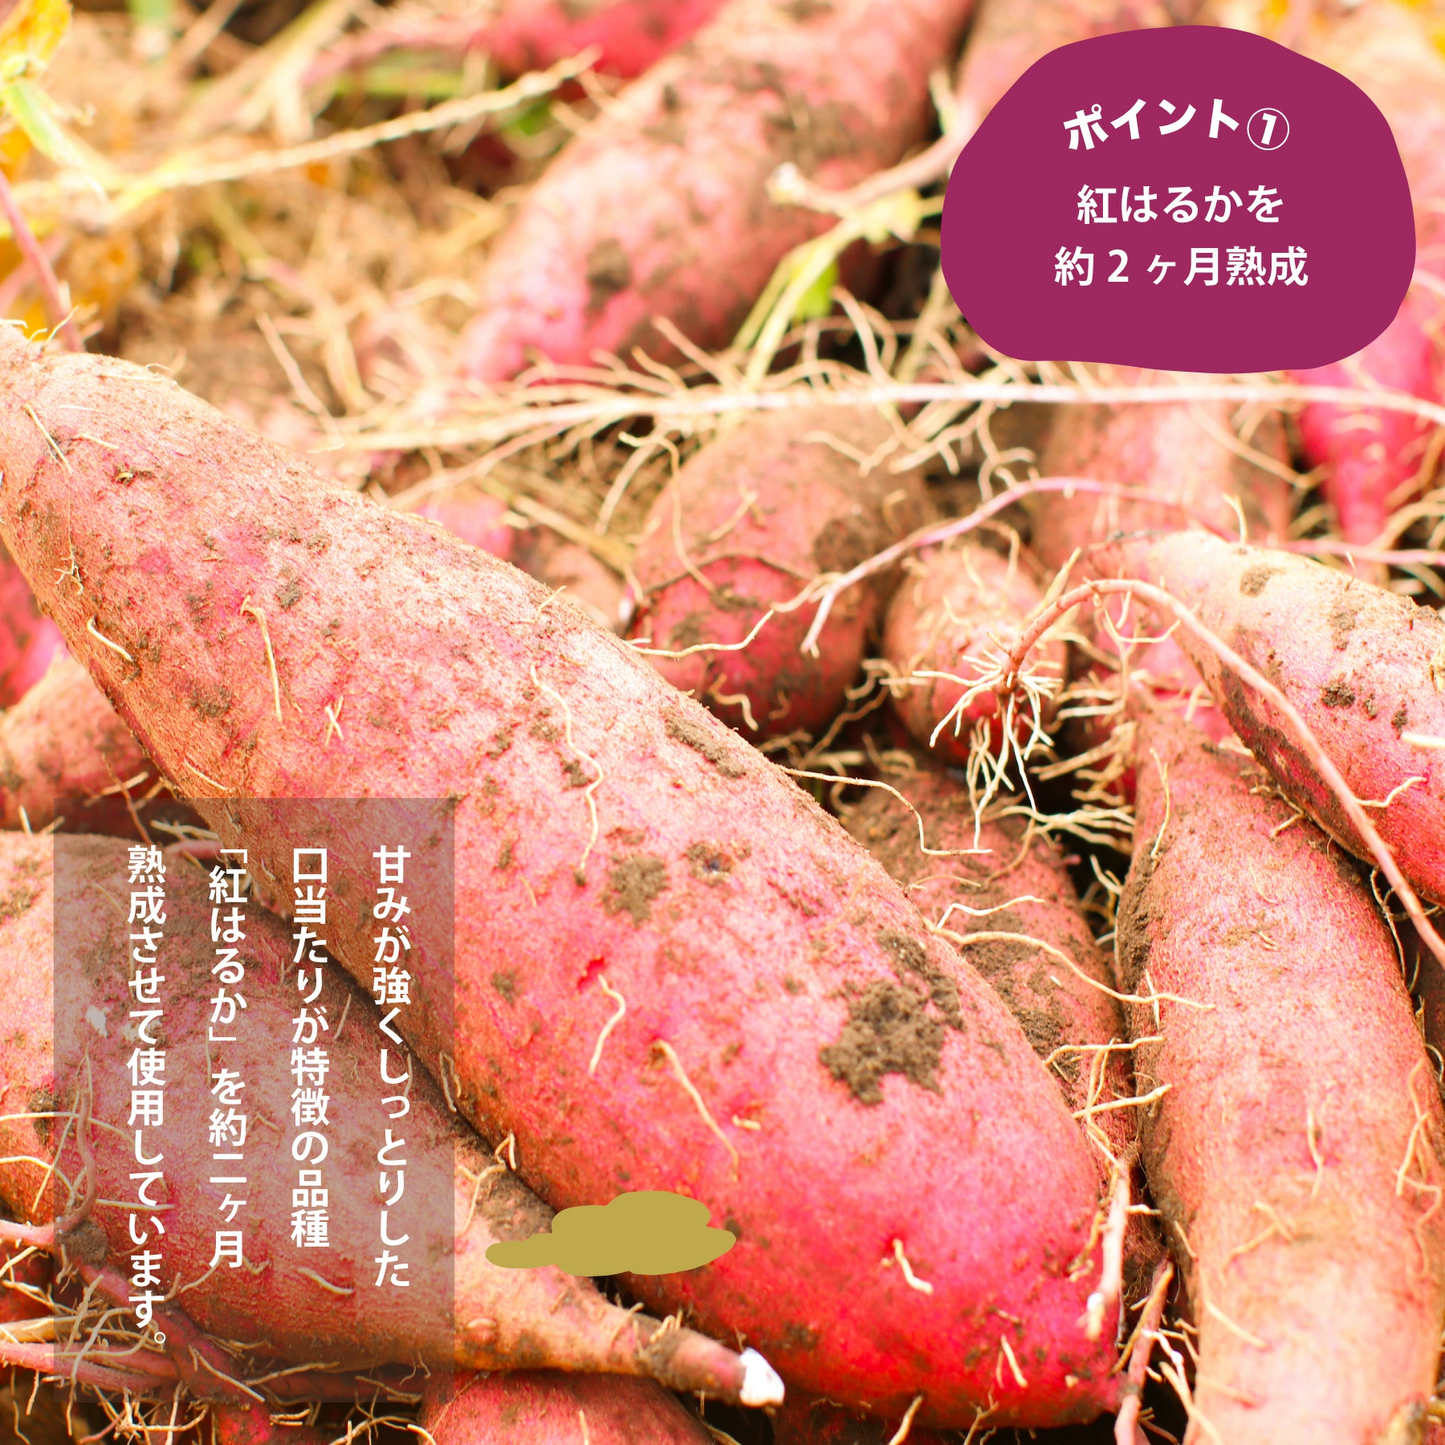 鹿児島県産熟成紅はるか使用 紅はるか丸干し 干し芋 220g×3